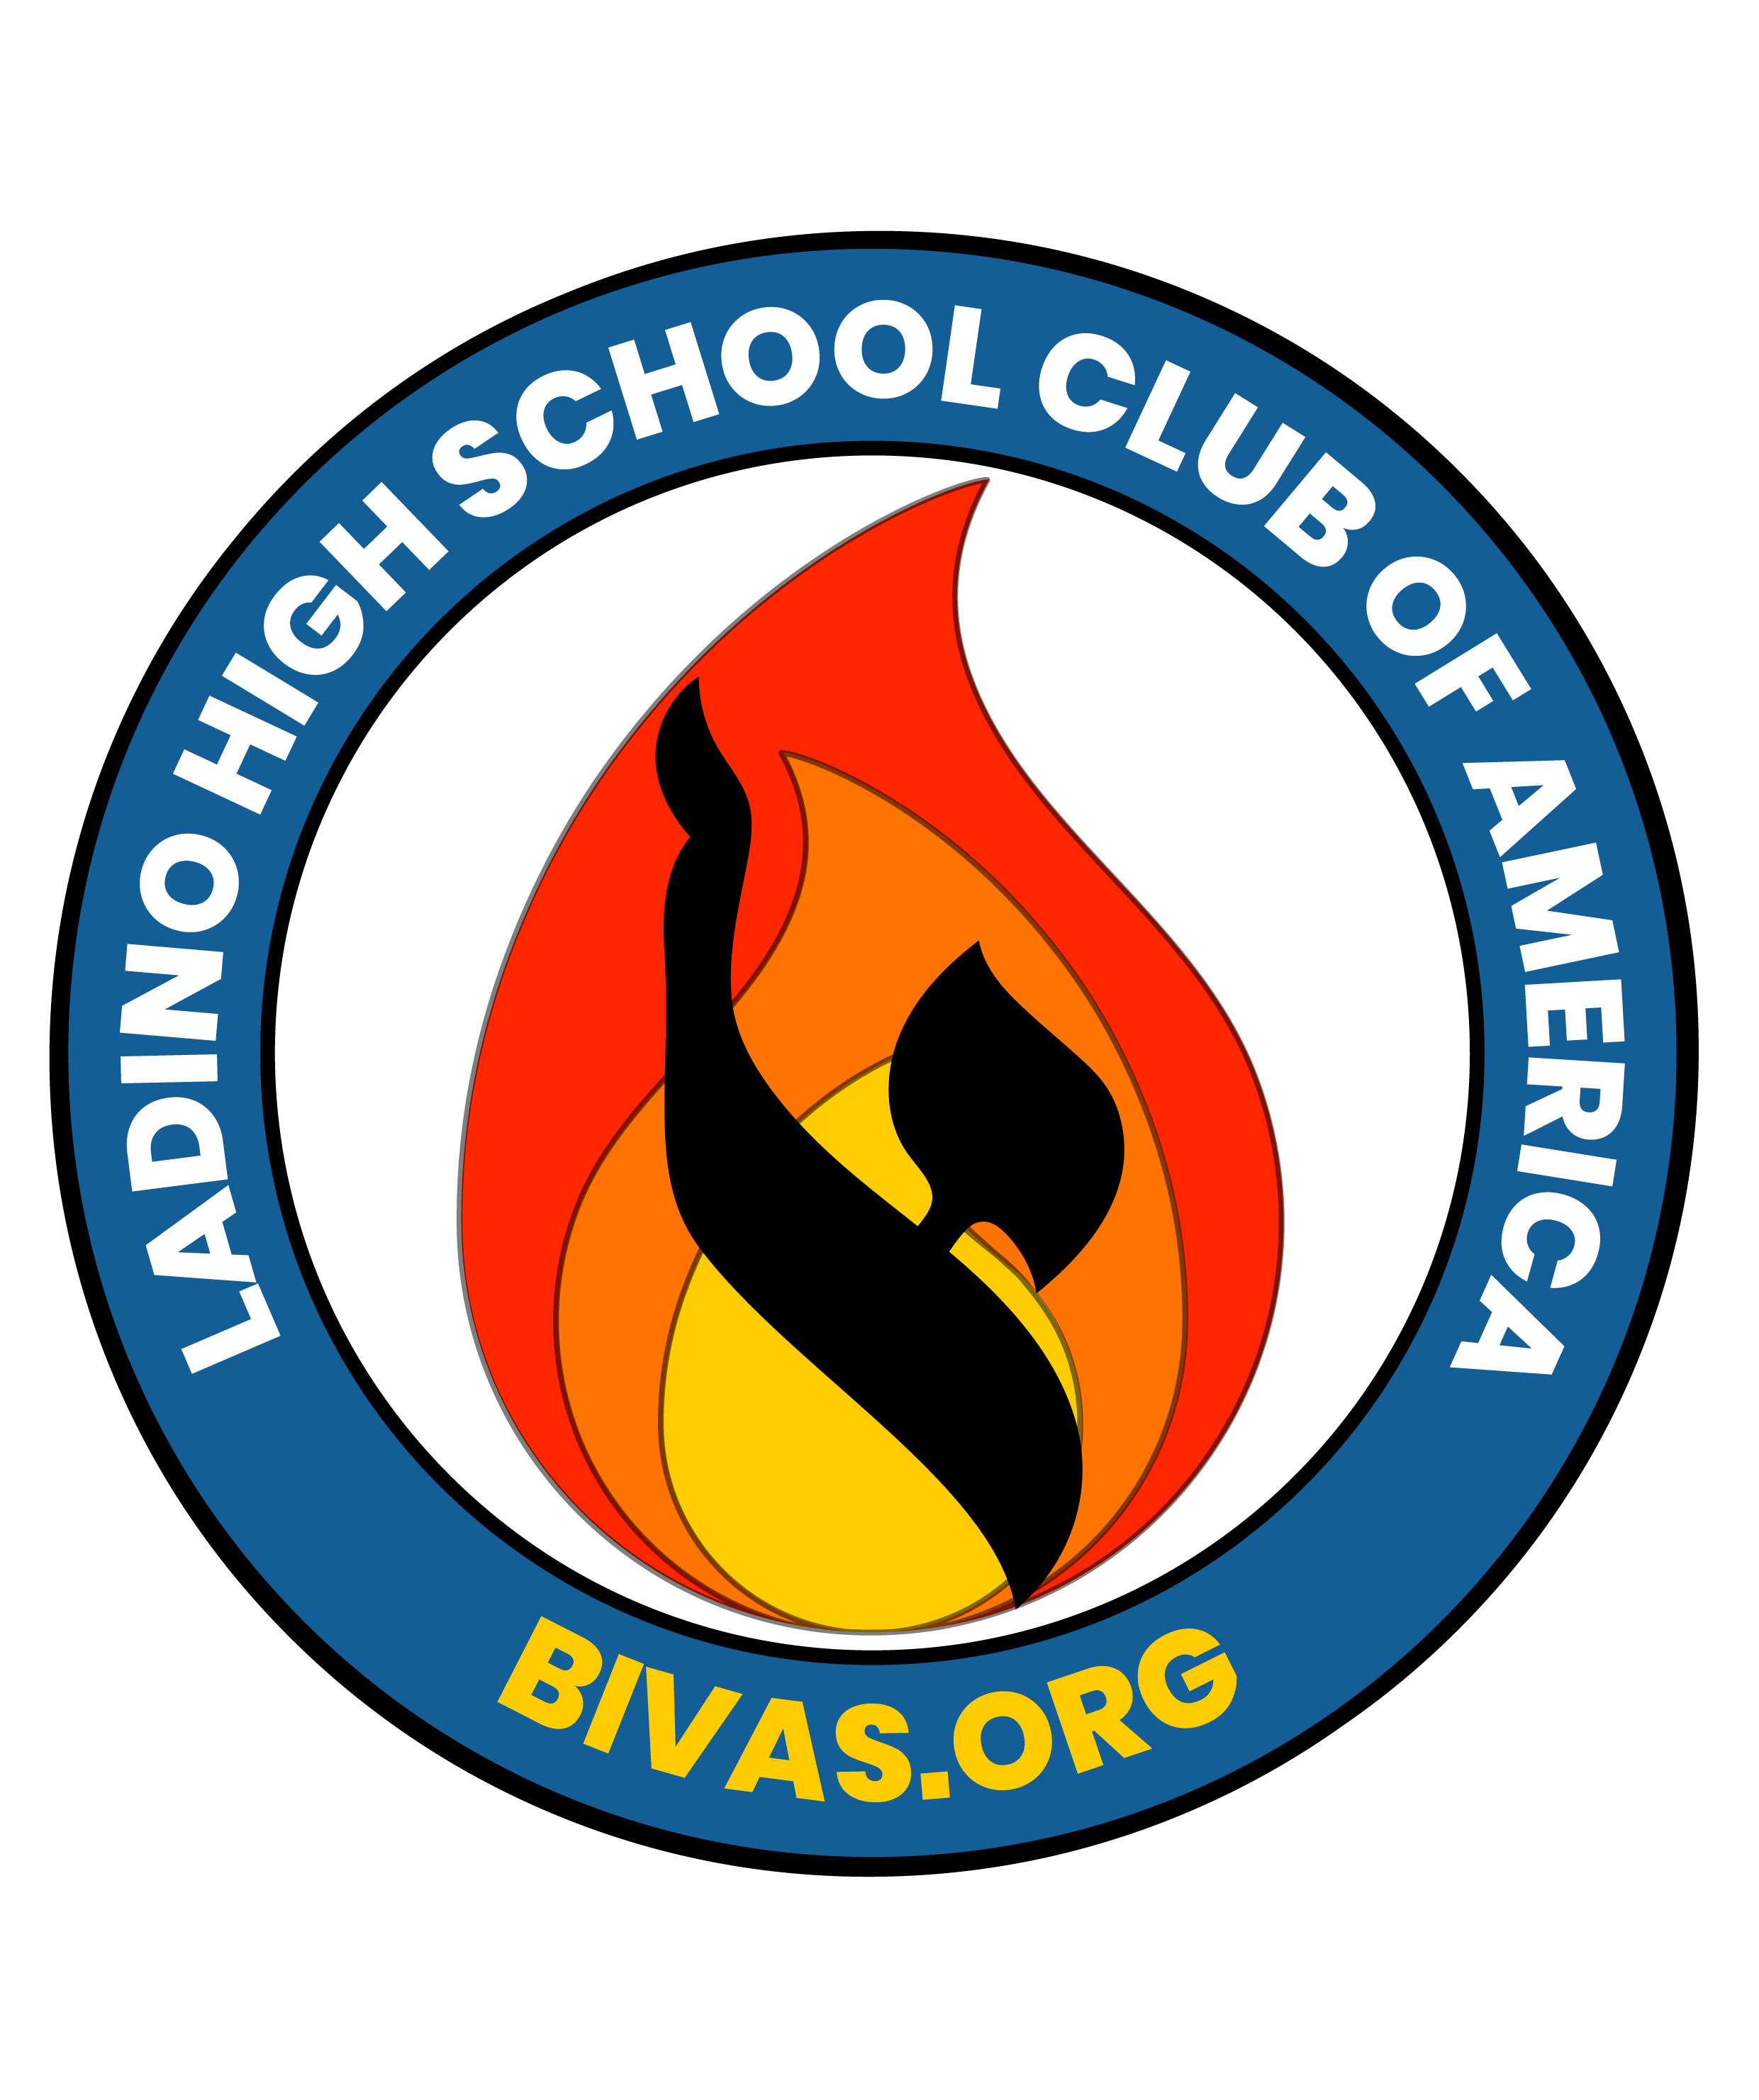 Bivas.org